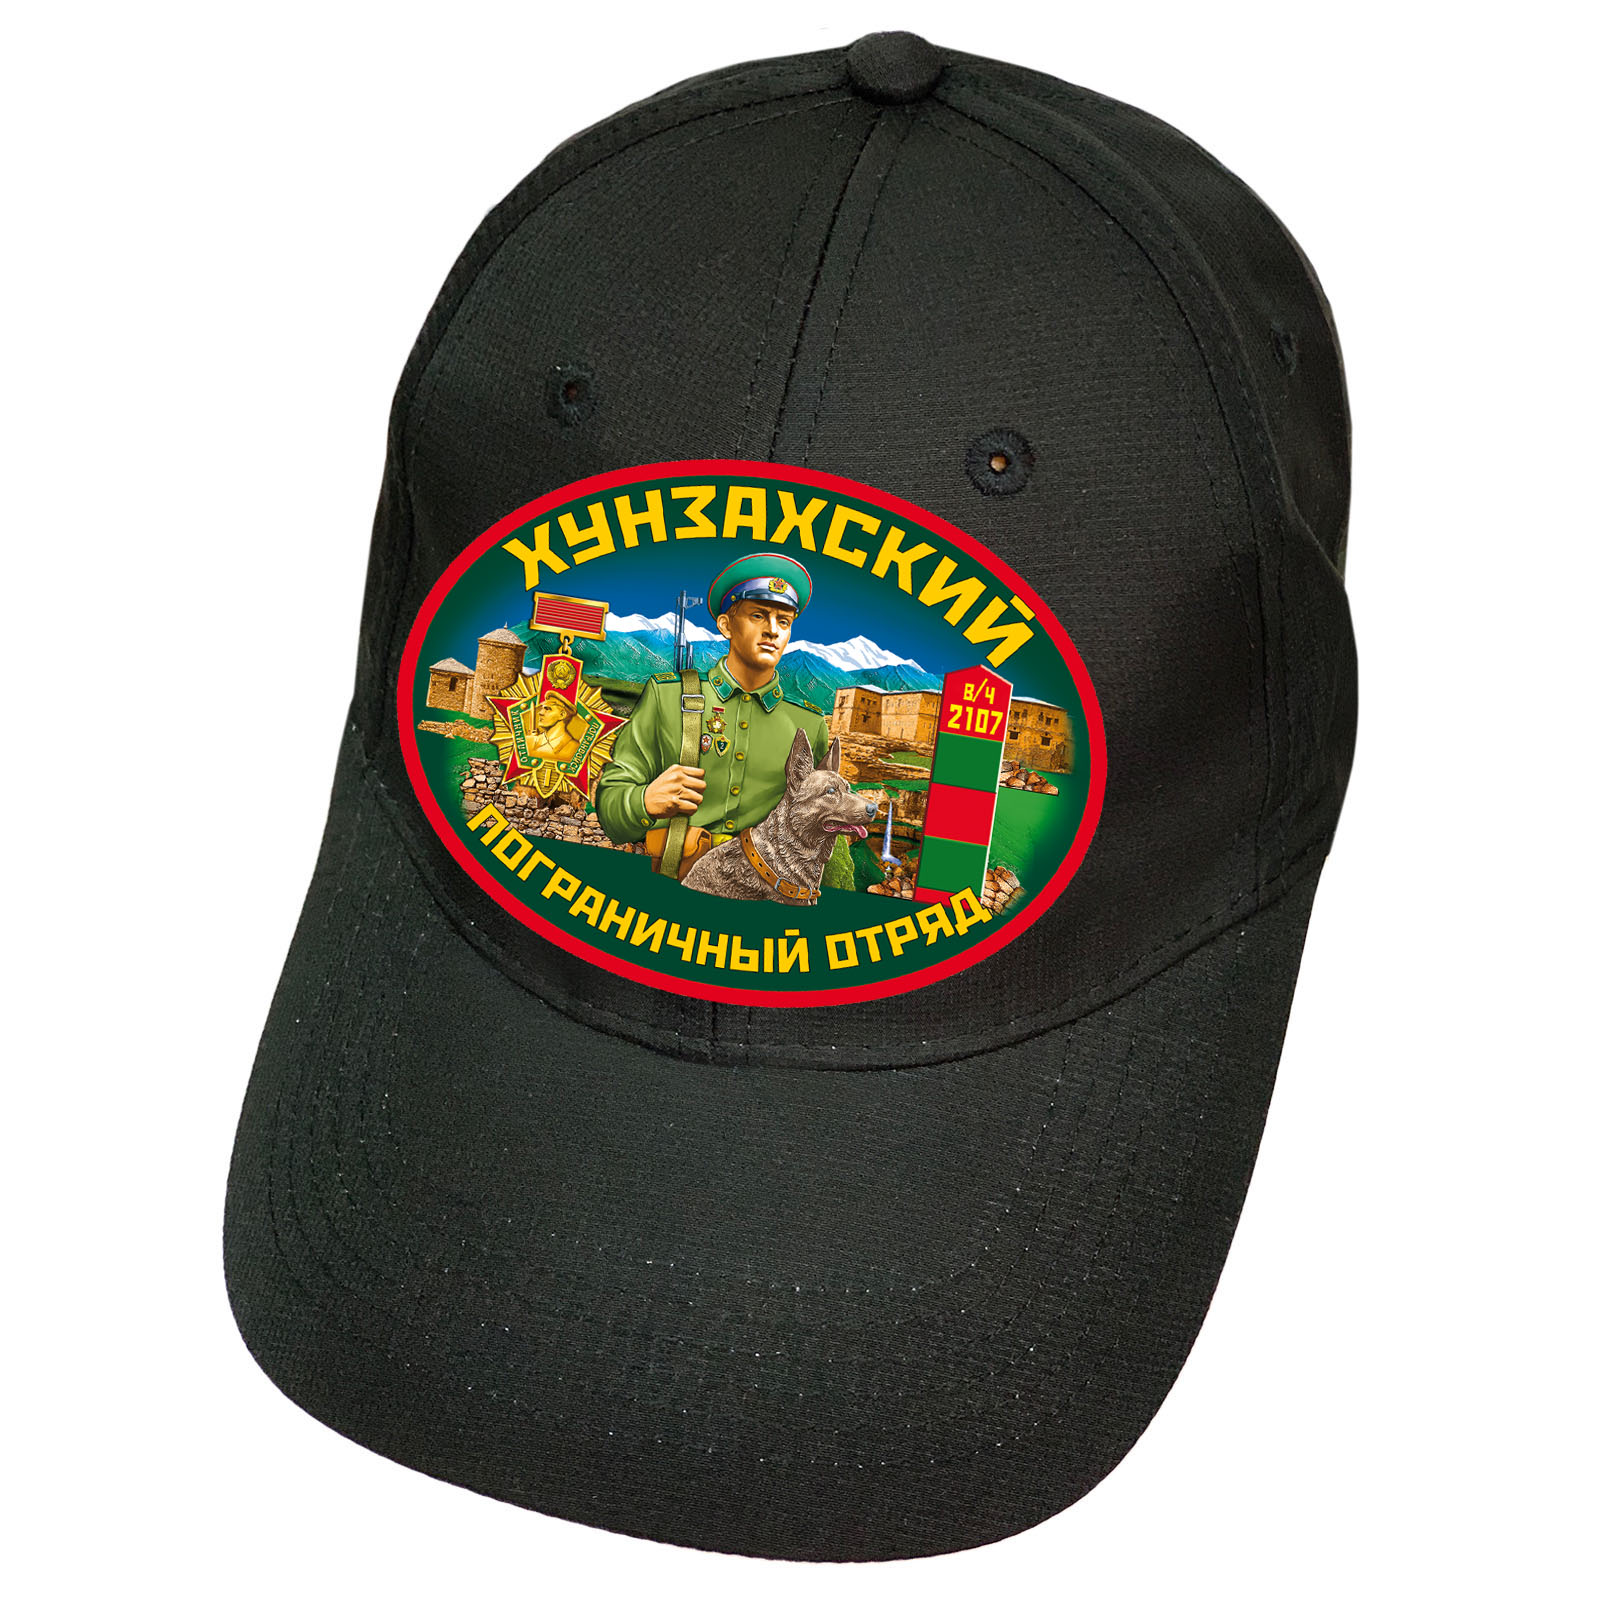 Чёрная кепка "Хунзахский пограничный отряд"